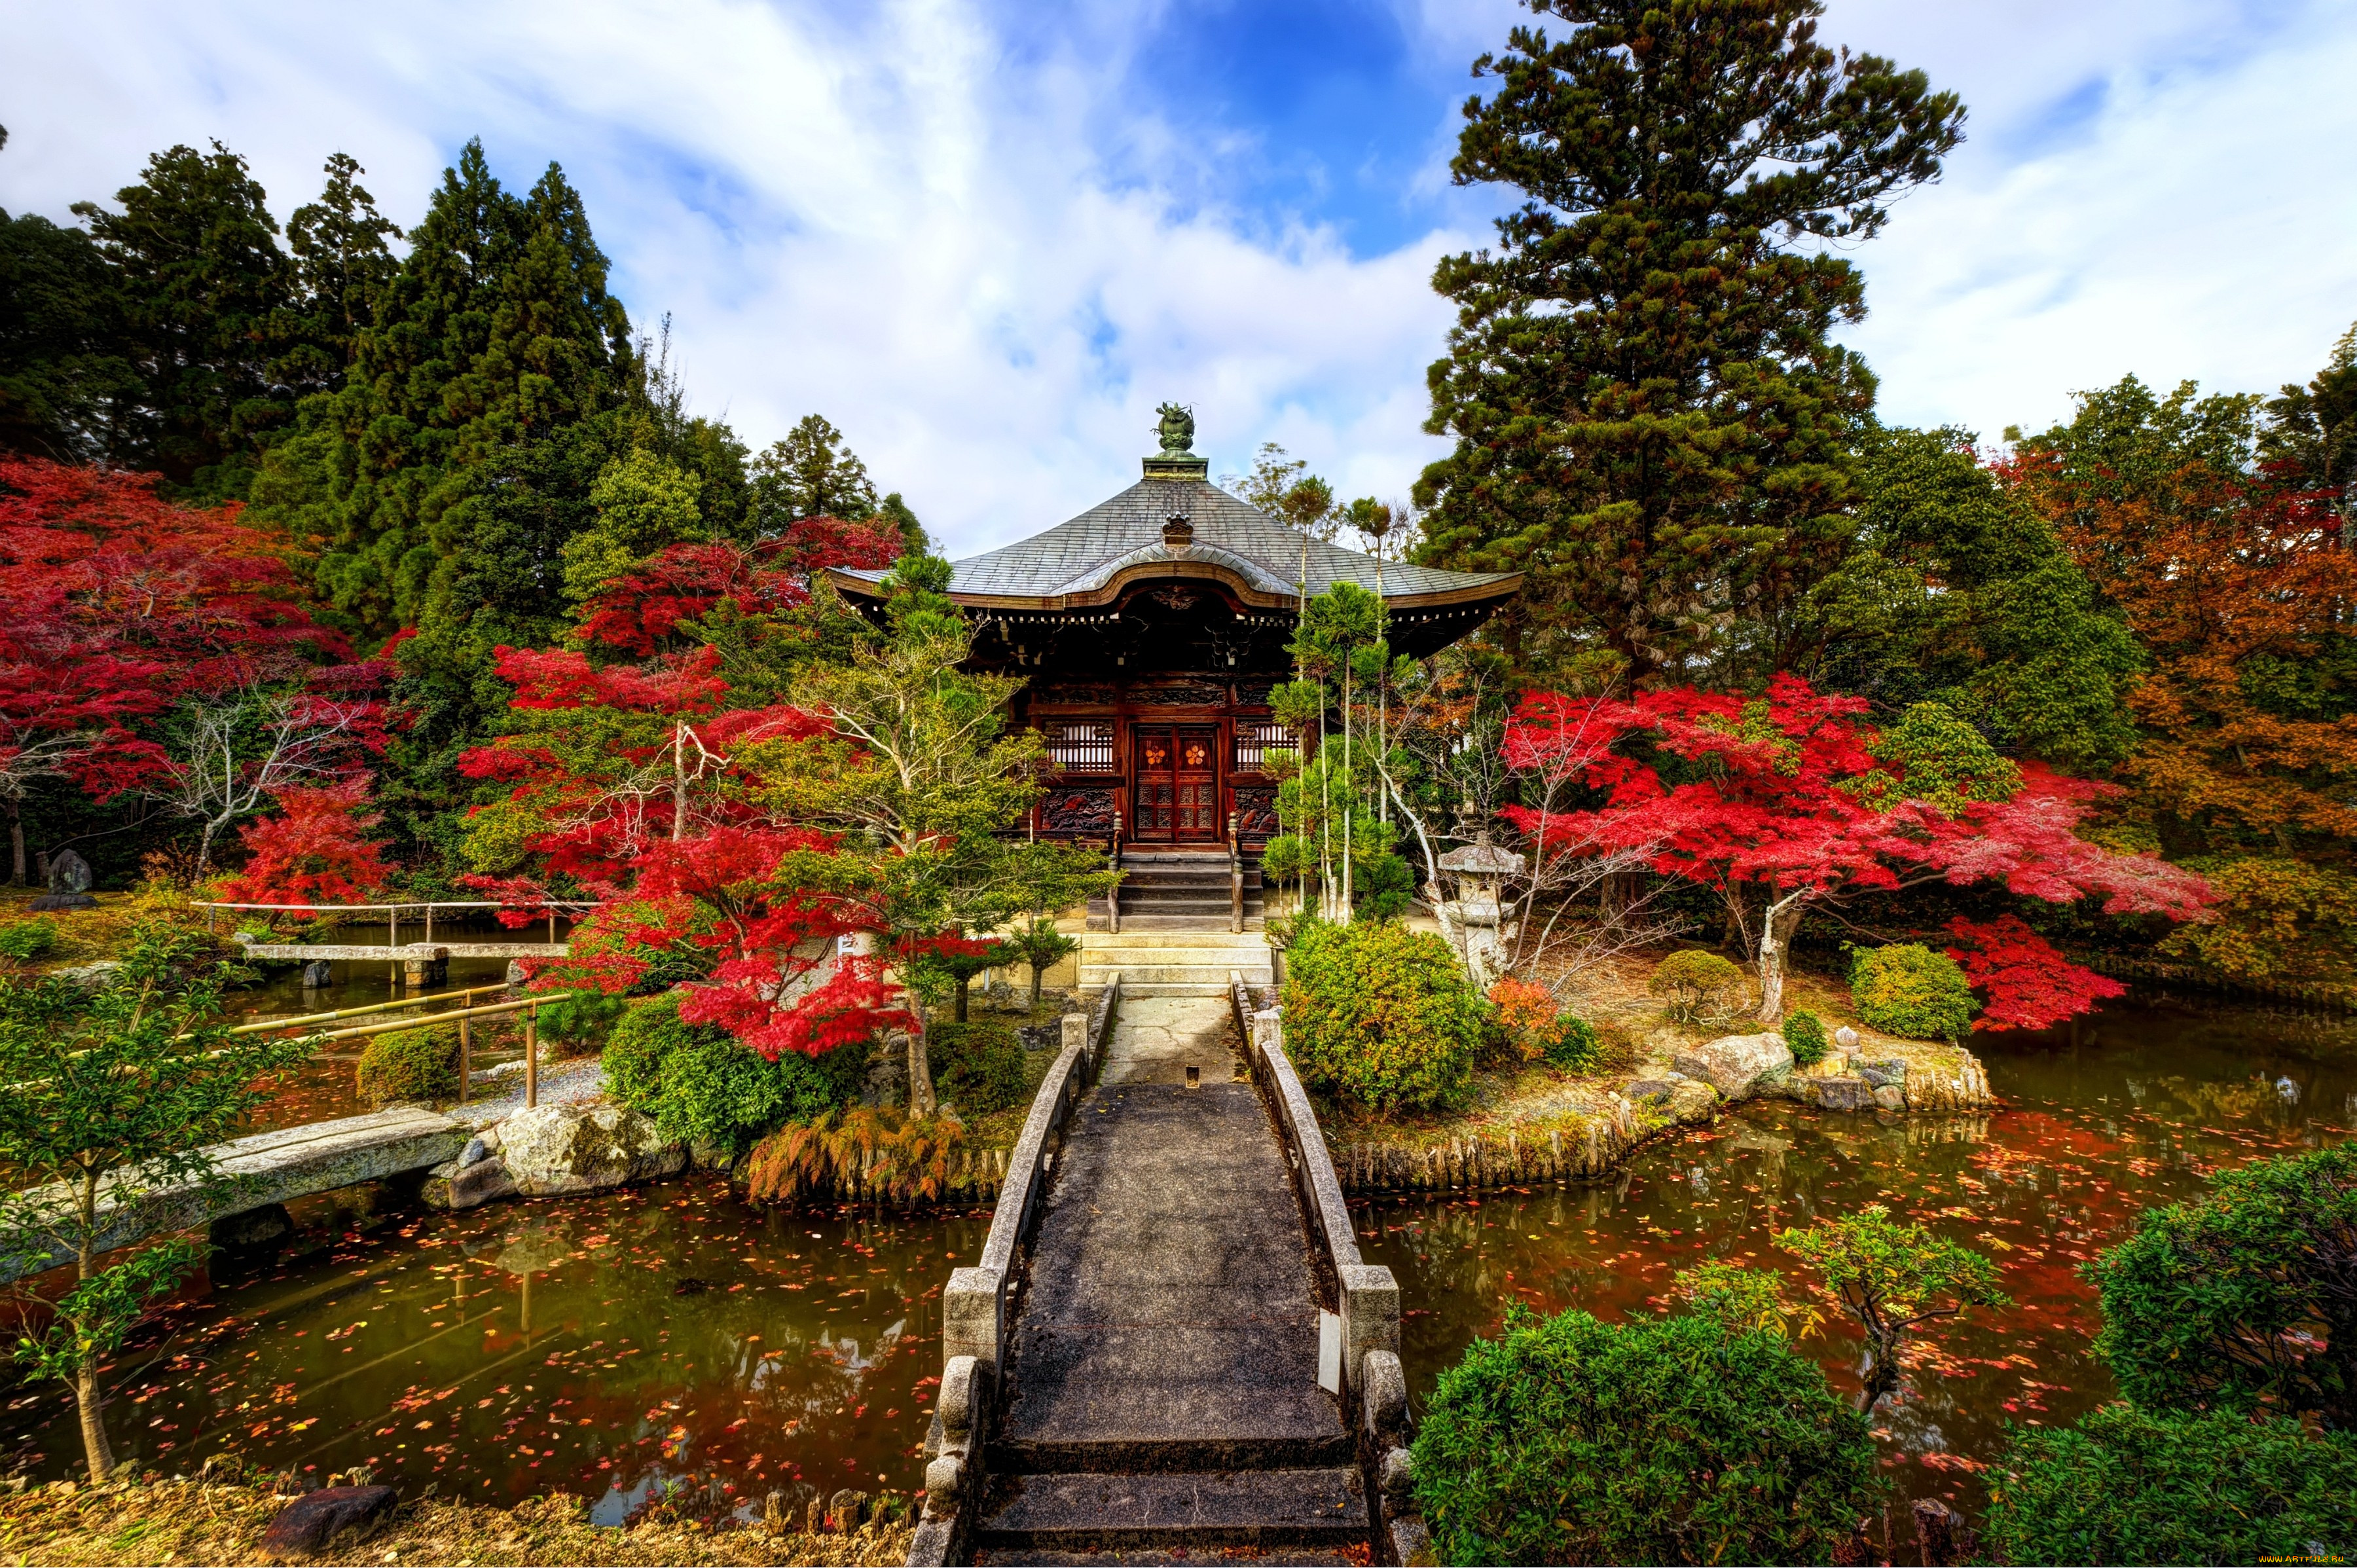 Забронировать столик в японском саду. Киото Япония. Сады Киото. Японский сад Цукияма. Пагода Киото сад.